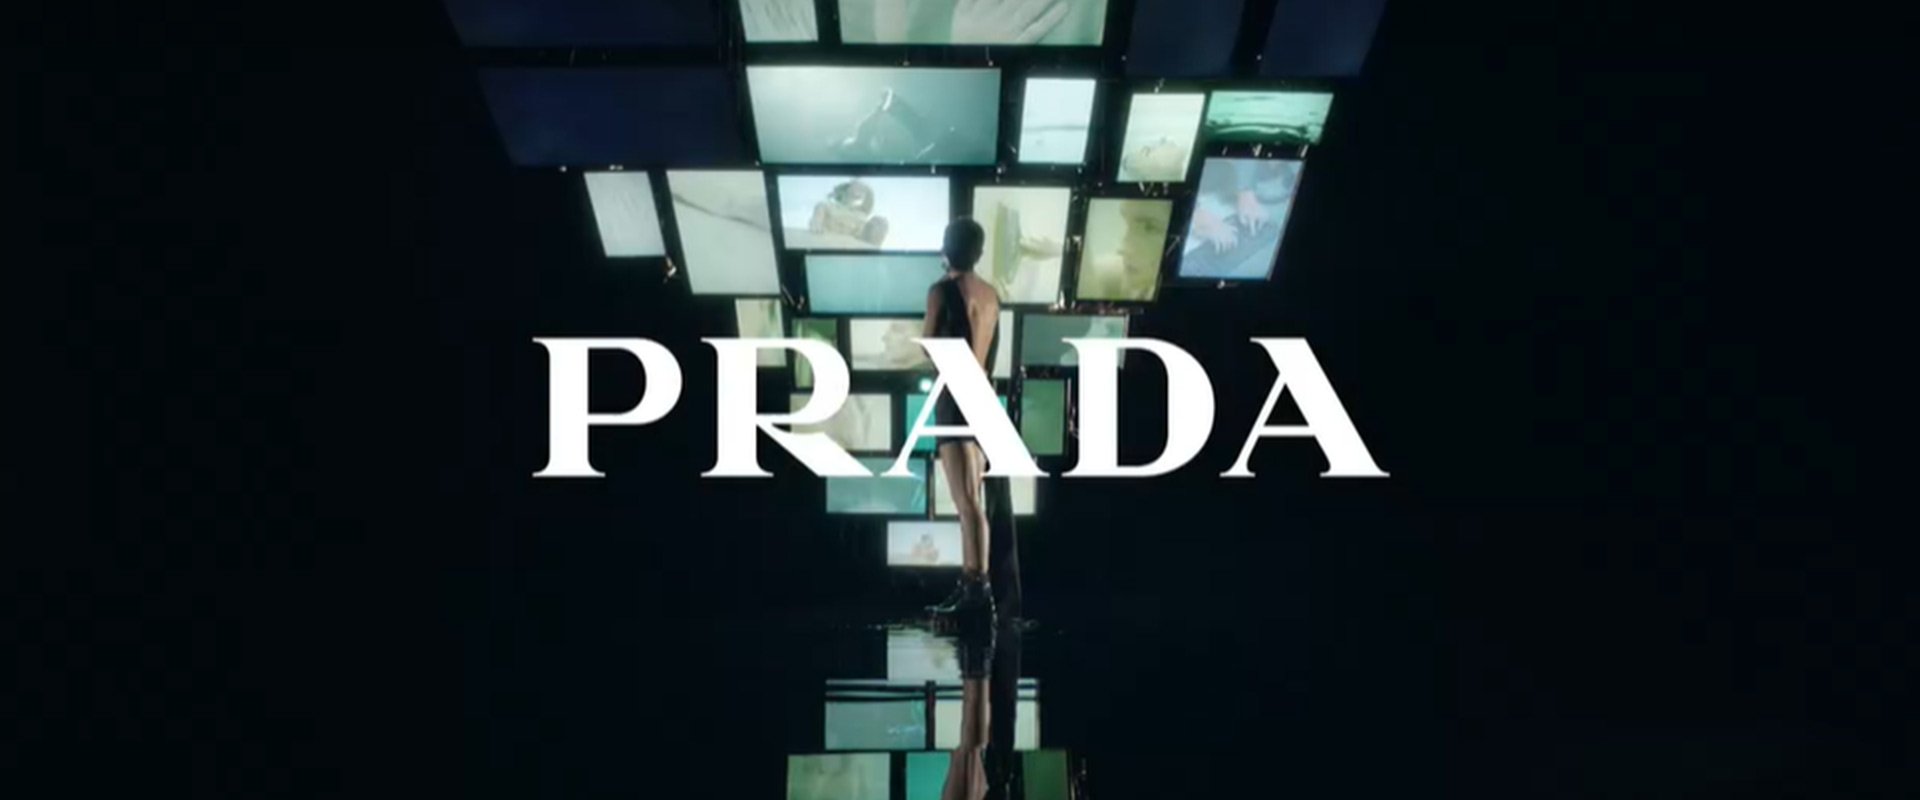 Prada - L'Oréal Group - L'Oréal Luxe Division